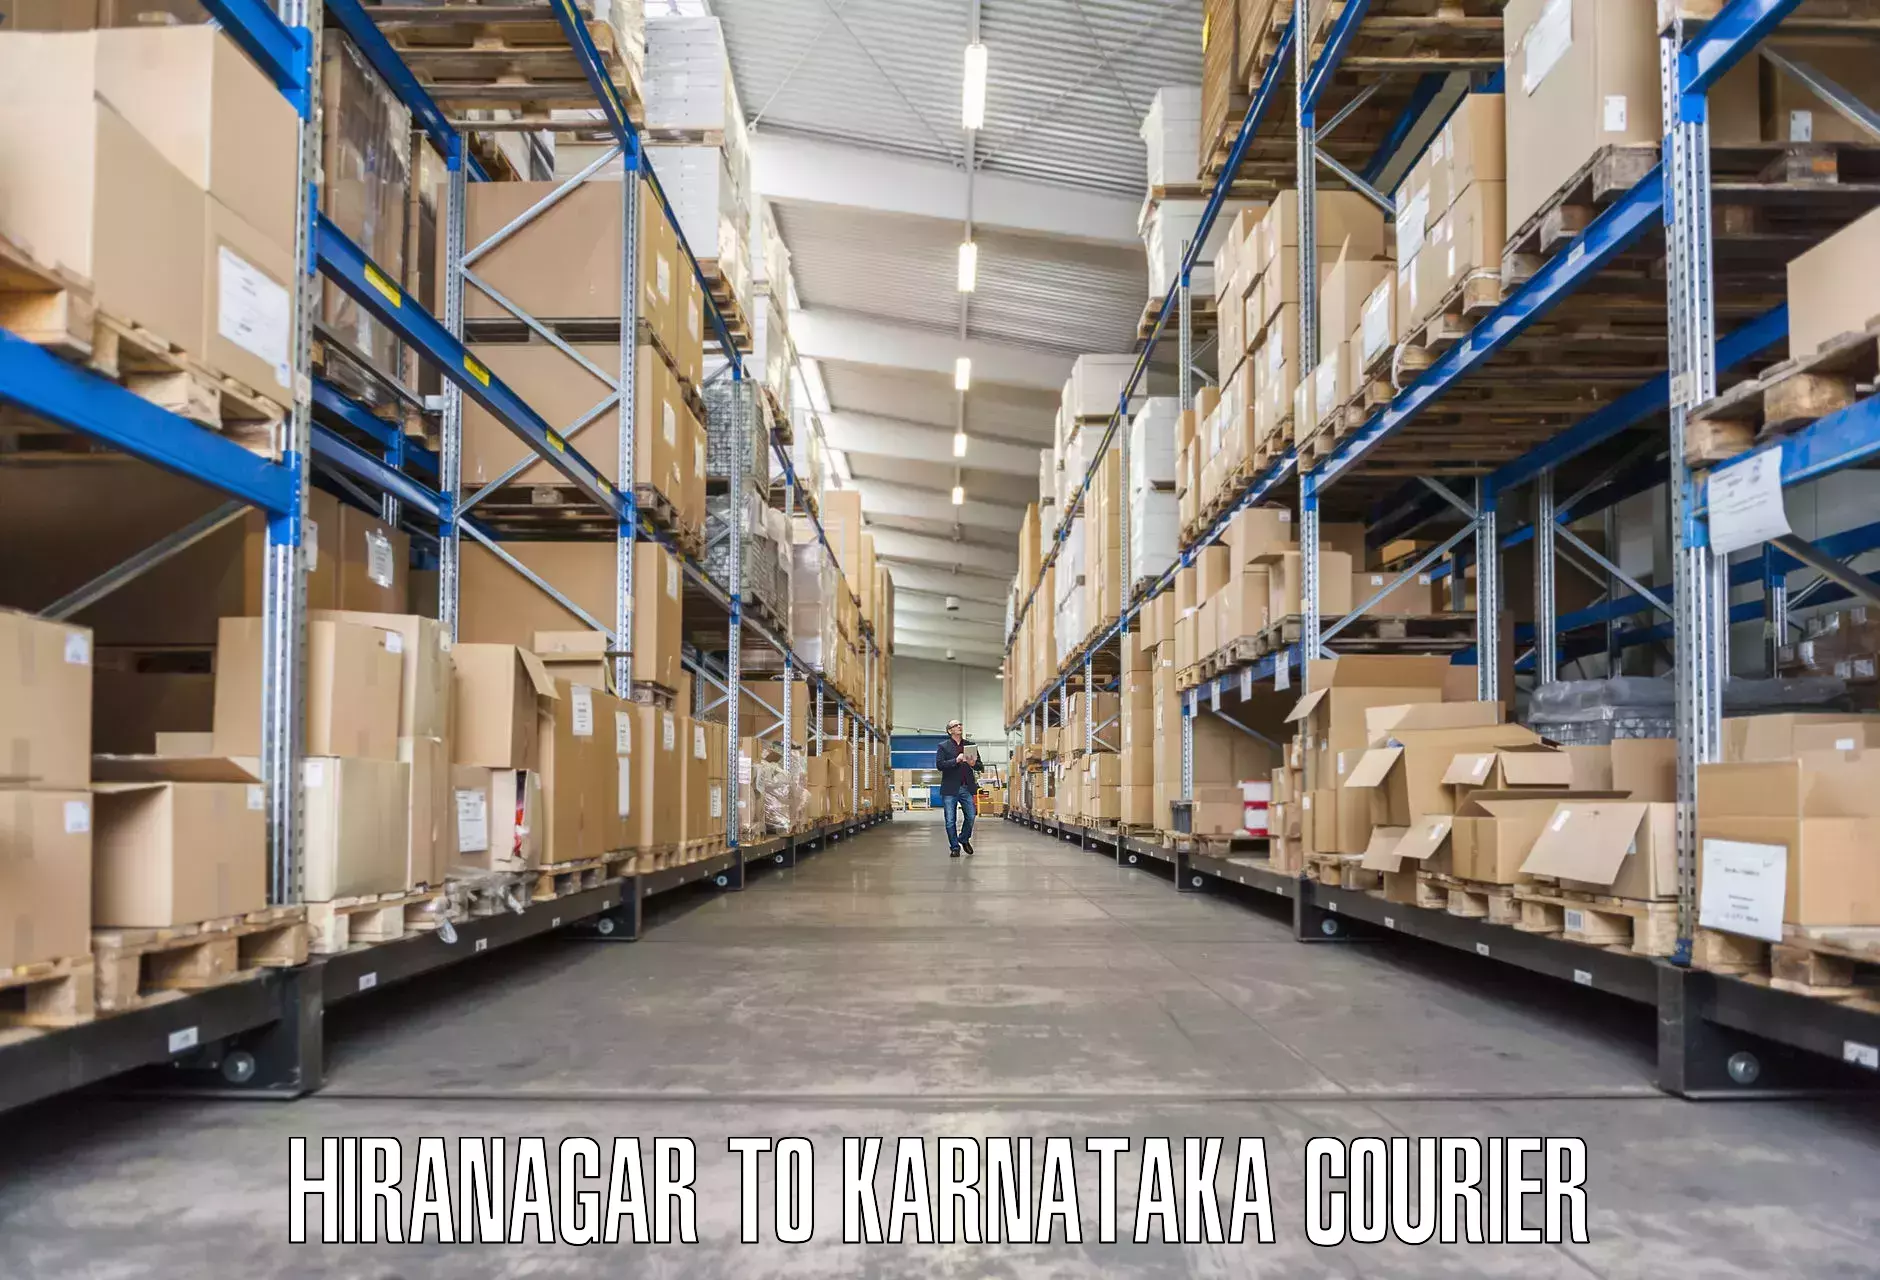 Residential moving experts Hiranagar to Karnataka